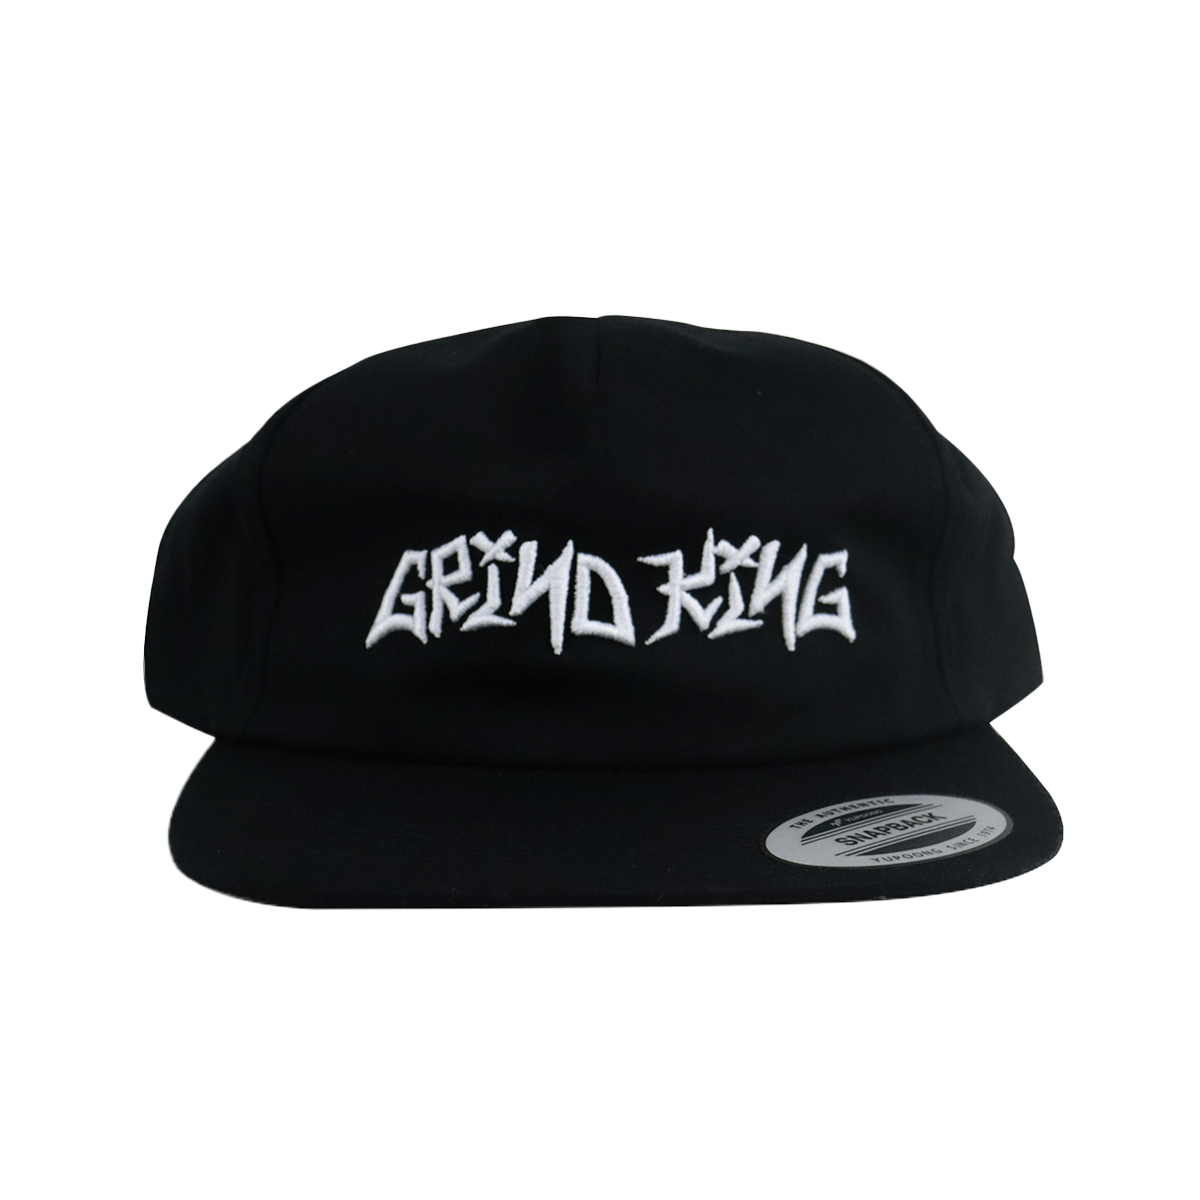 Grind King Graffiti Script Hat - Black